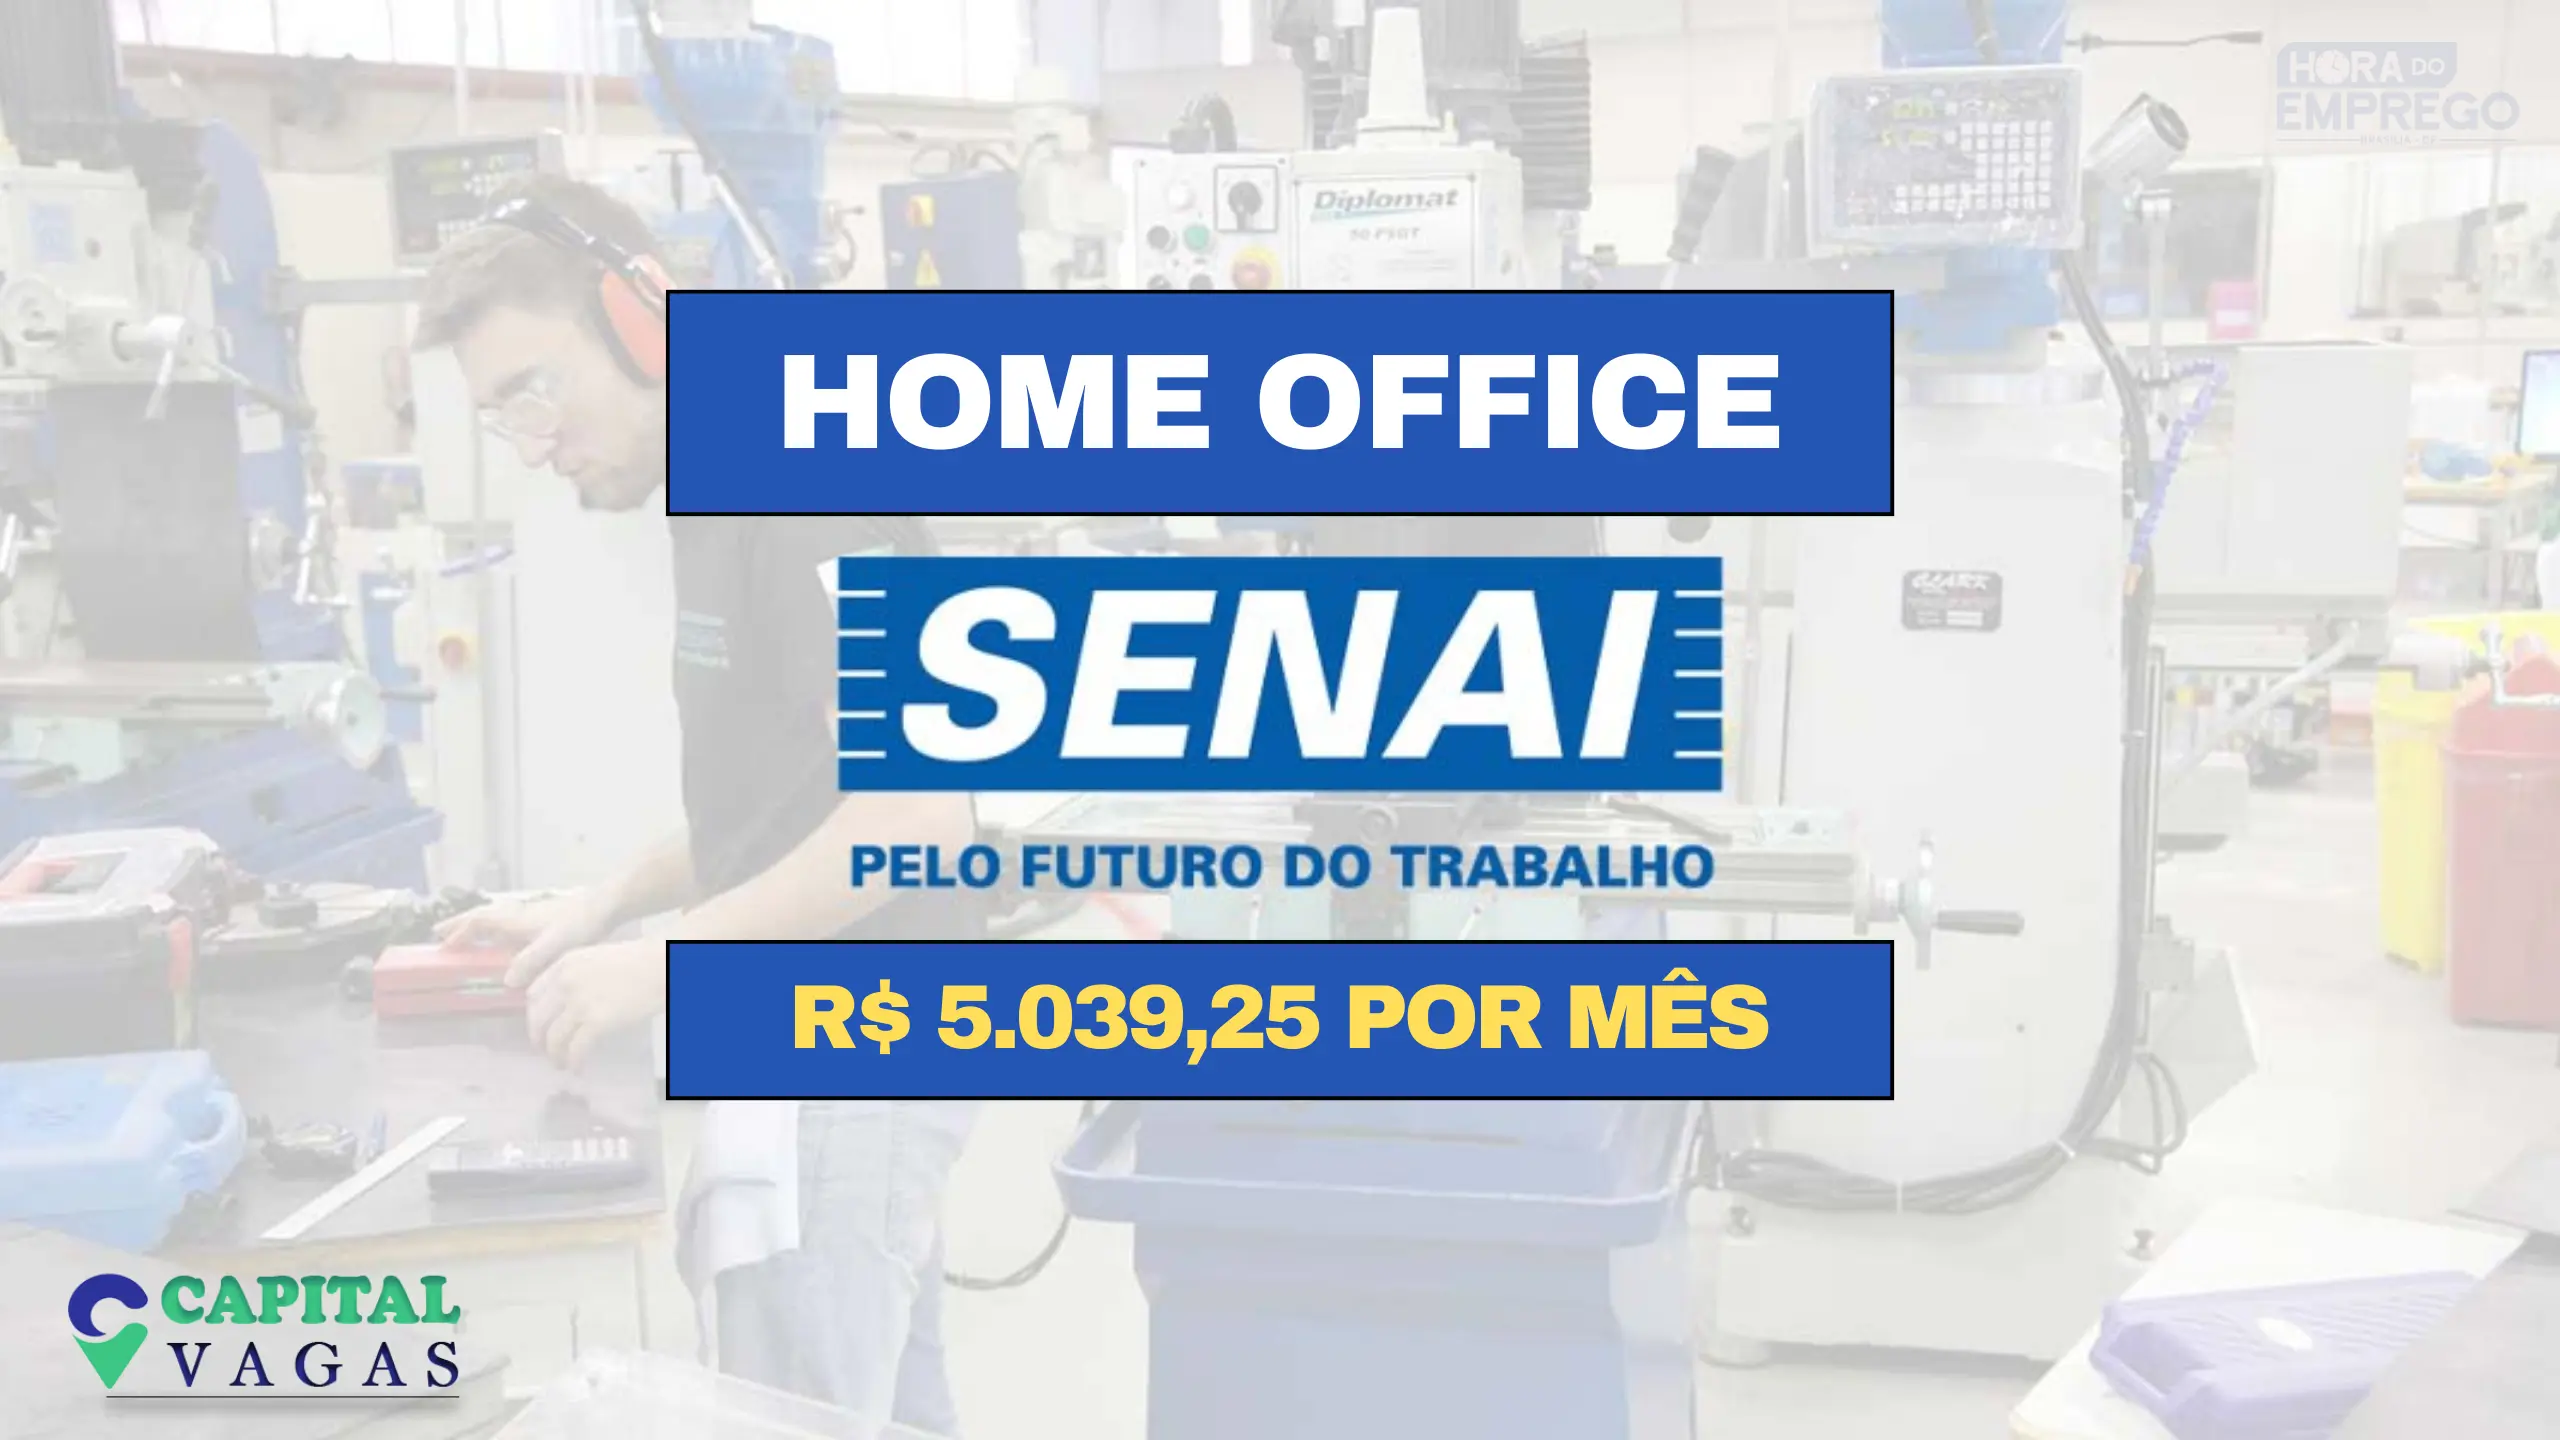 Trabalhe de Casa: Senai abre vaga HOME OFFICE com salário de R$ 5.039,25 por mês no setor de T.I